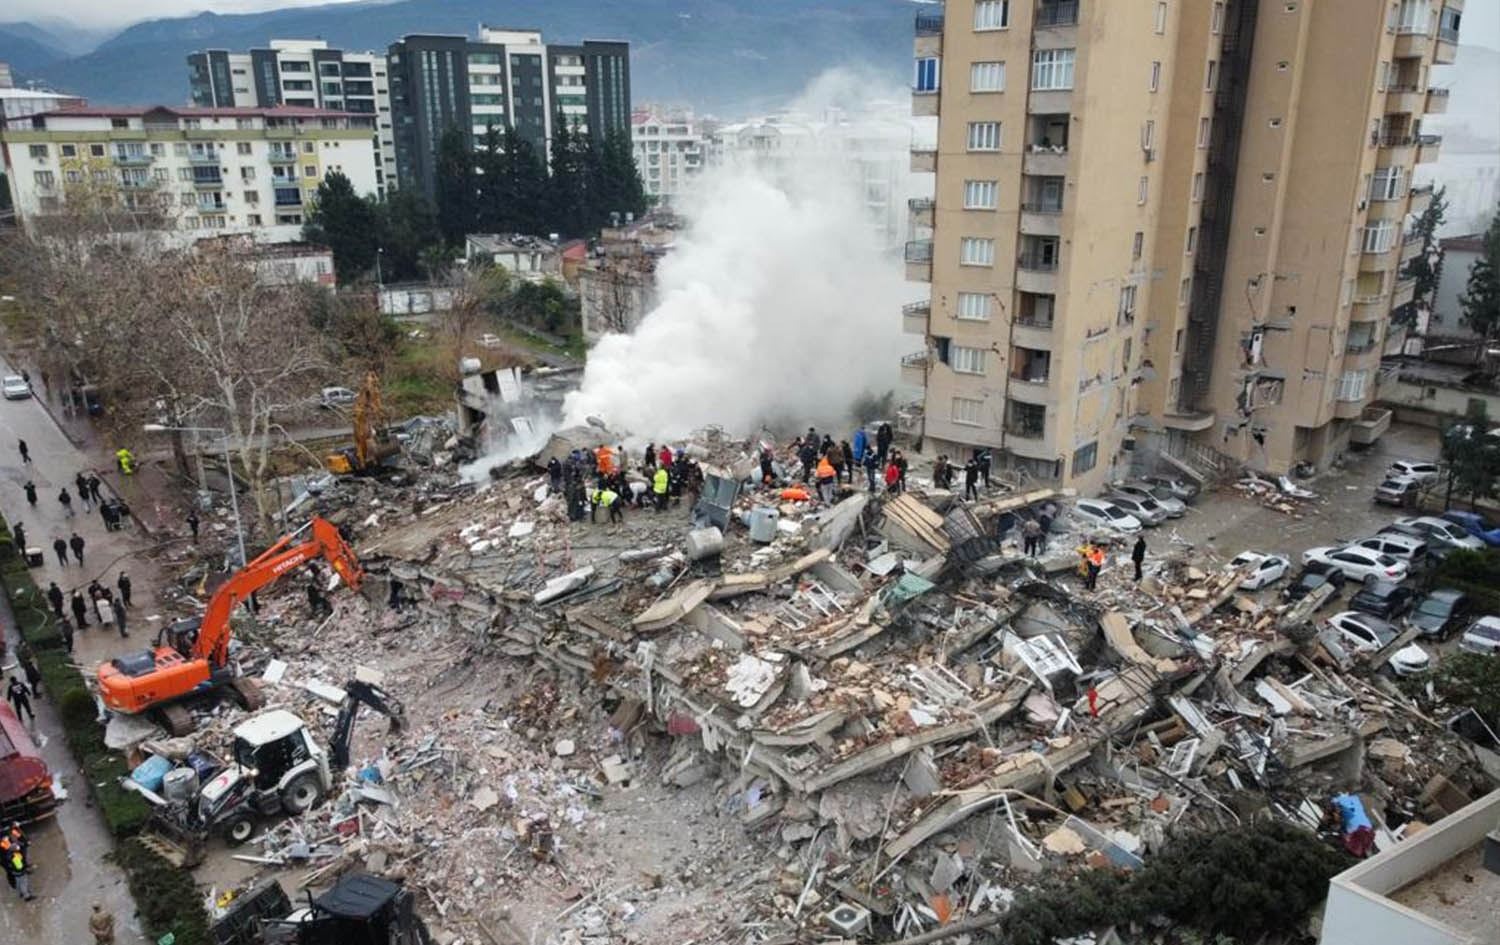 被災後の街の風景。手前の建物が倒壊しており、救助のゼッケンをつけた人が集まっている。左手前にショベルカー2台